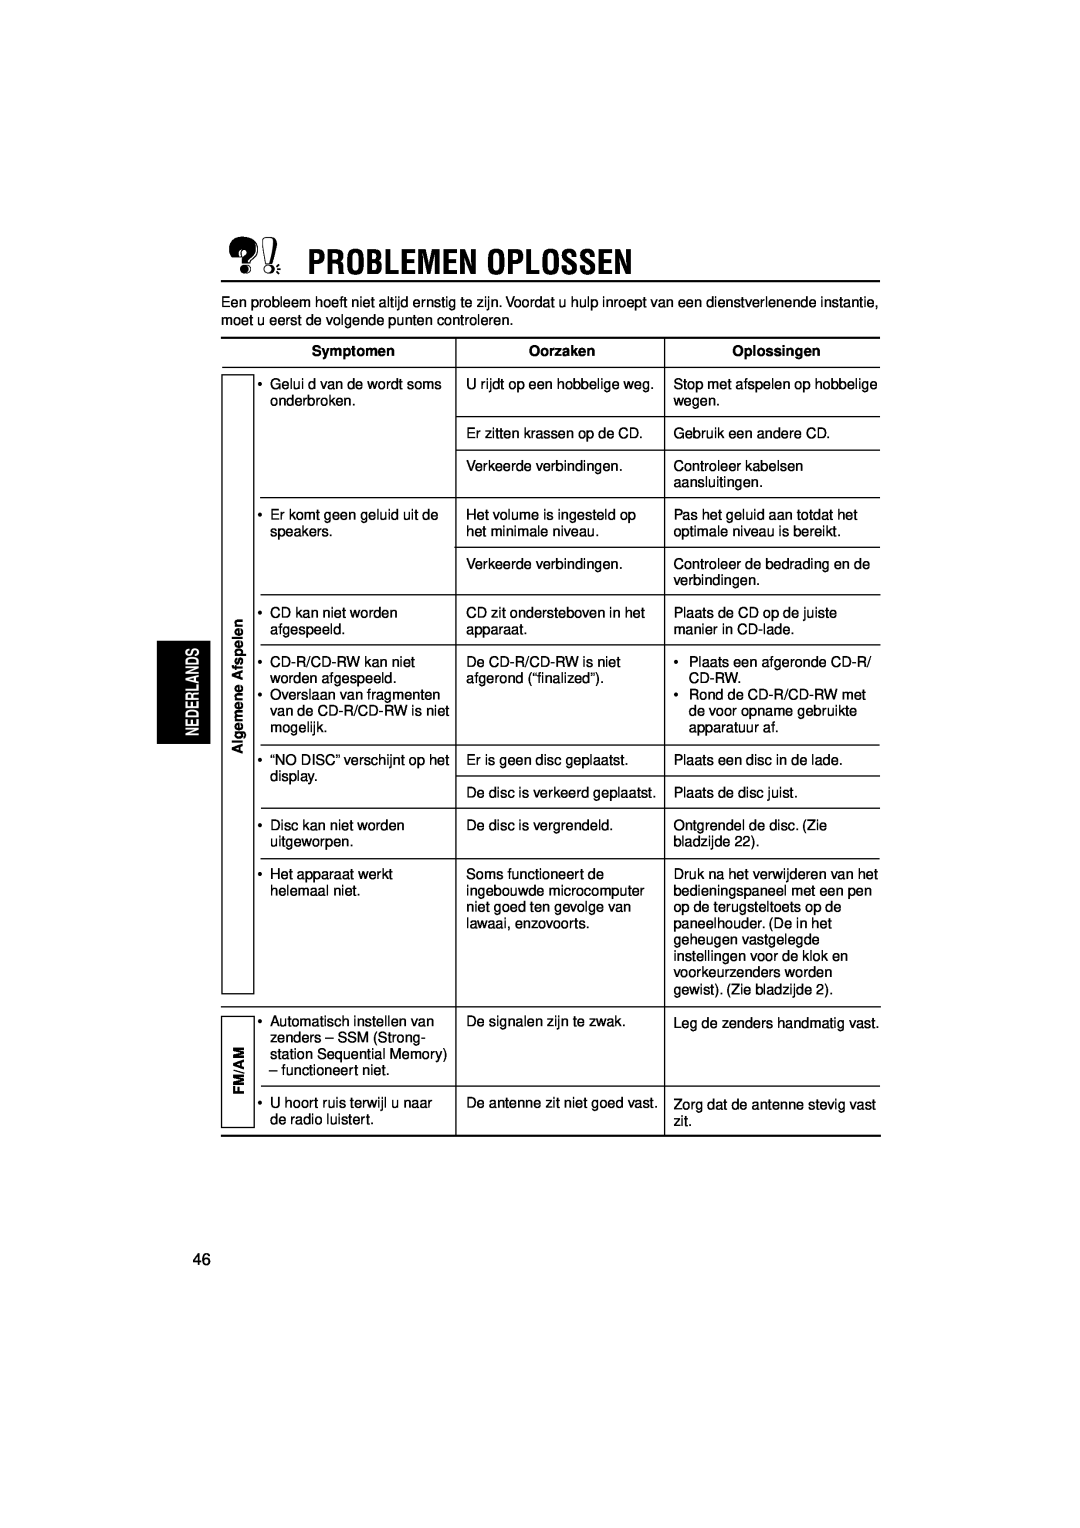 JVC KD-LH7R, KD-LH5R manual Problemen Oplossen, Symptomen, Oorzaken, Oplossingen 